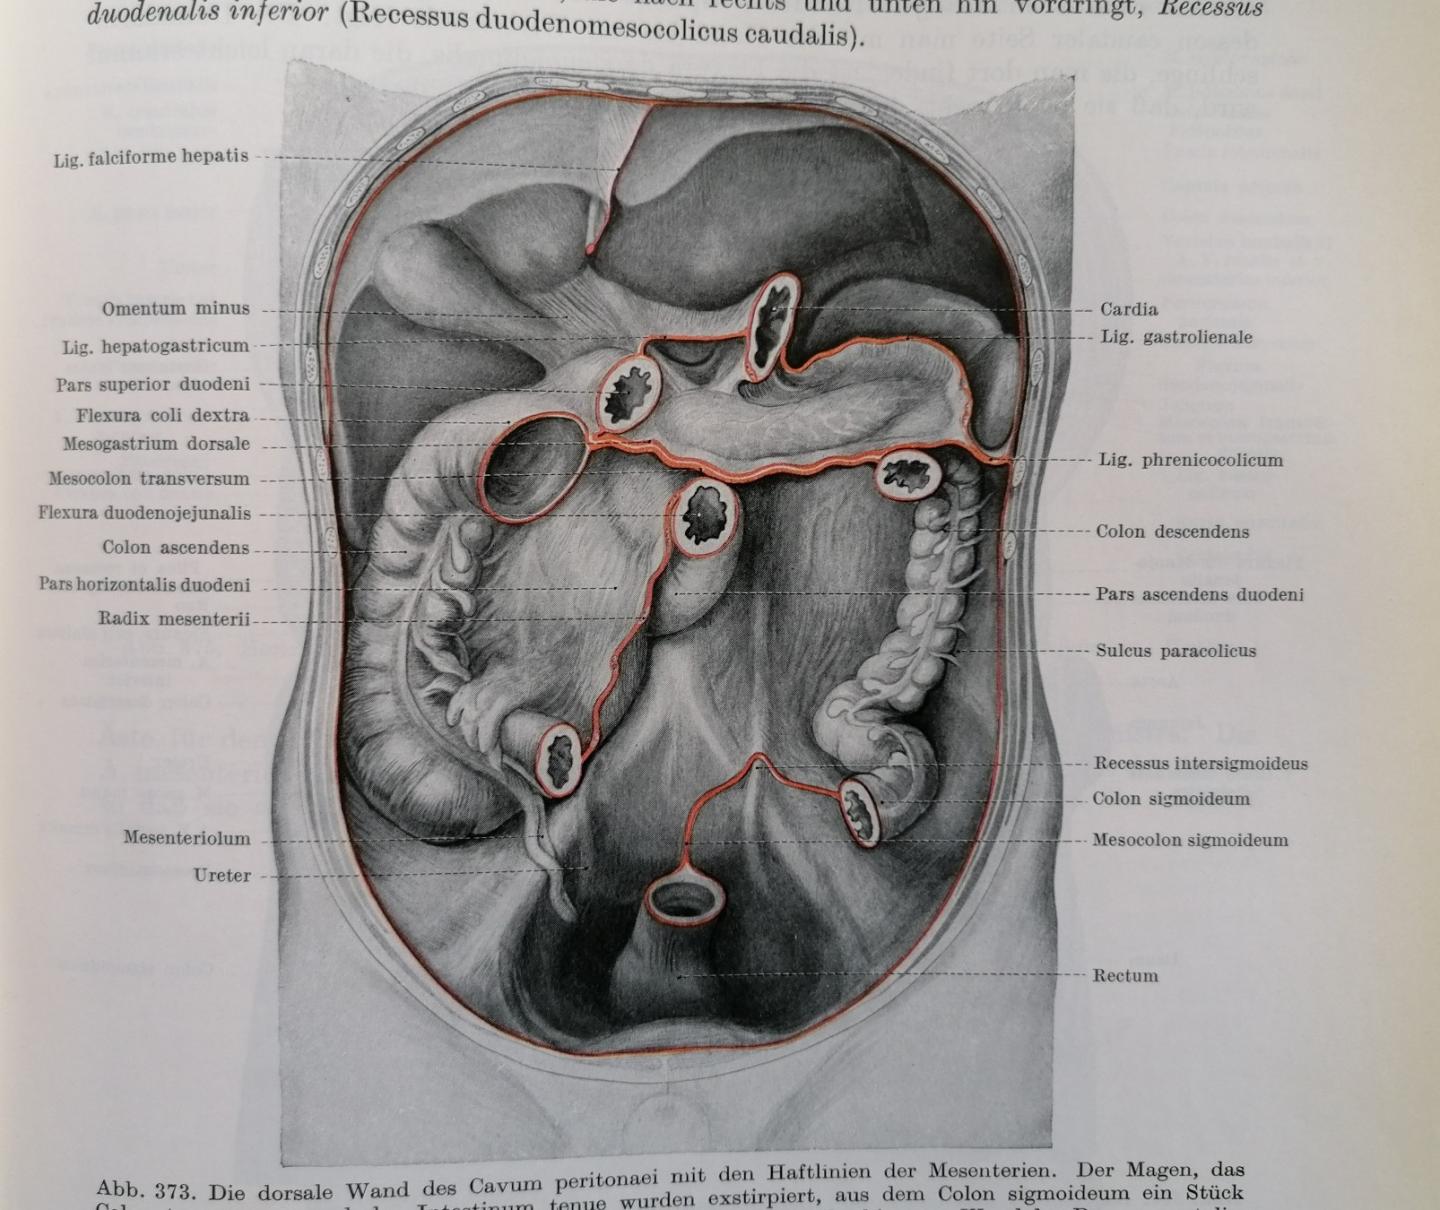 Anton Hafferl - Lehrbuch der topographischen Anatomie